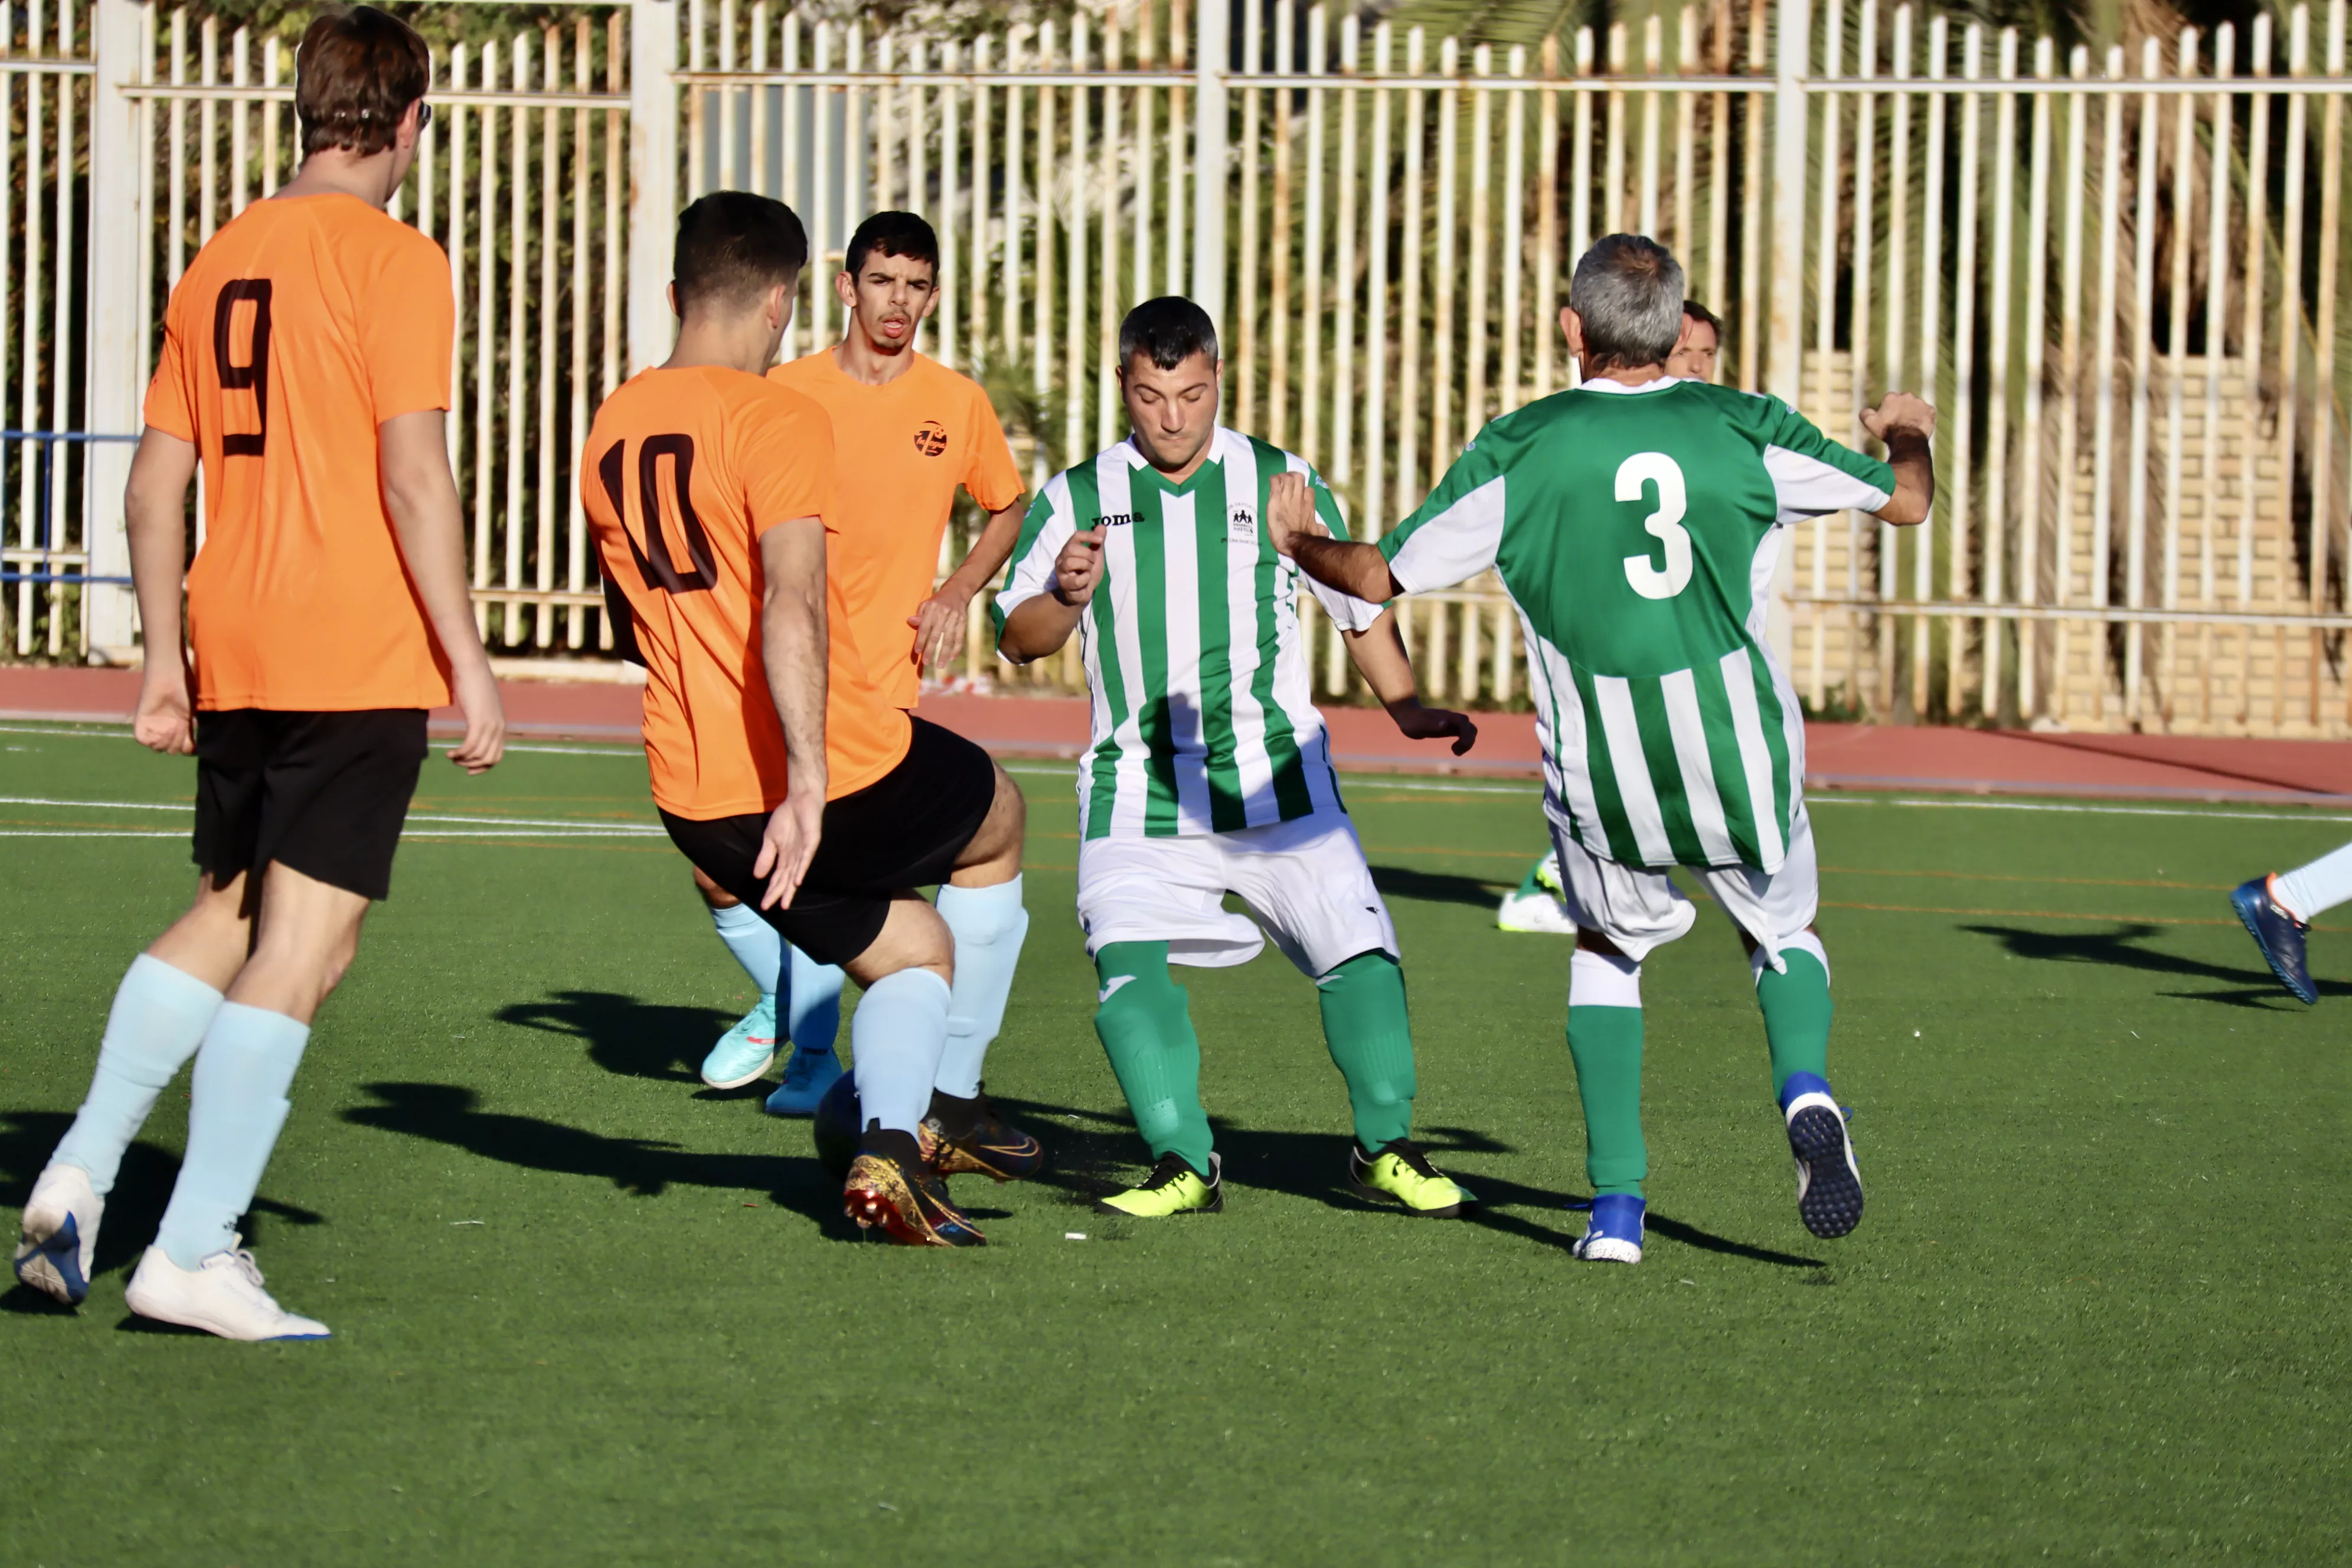 Campeonato Andaluz de Fútbol 7 FANDDI en Lucena